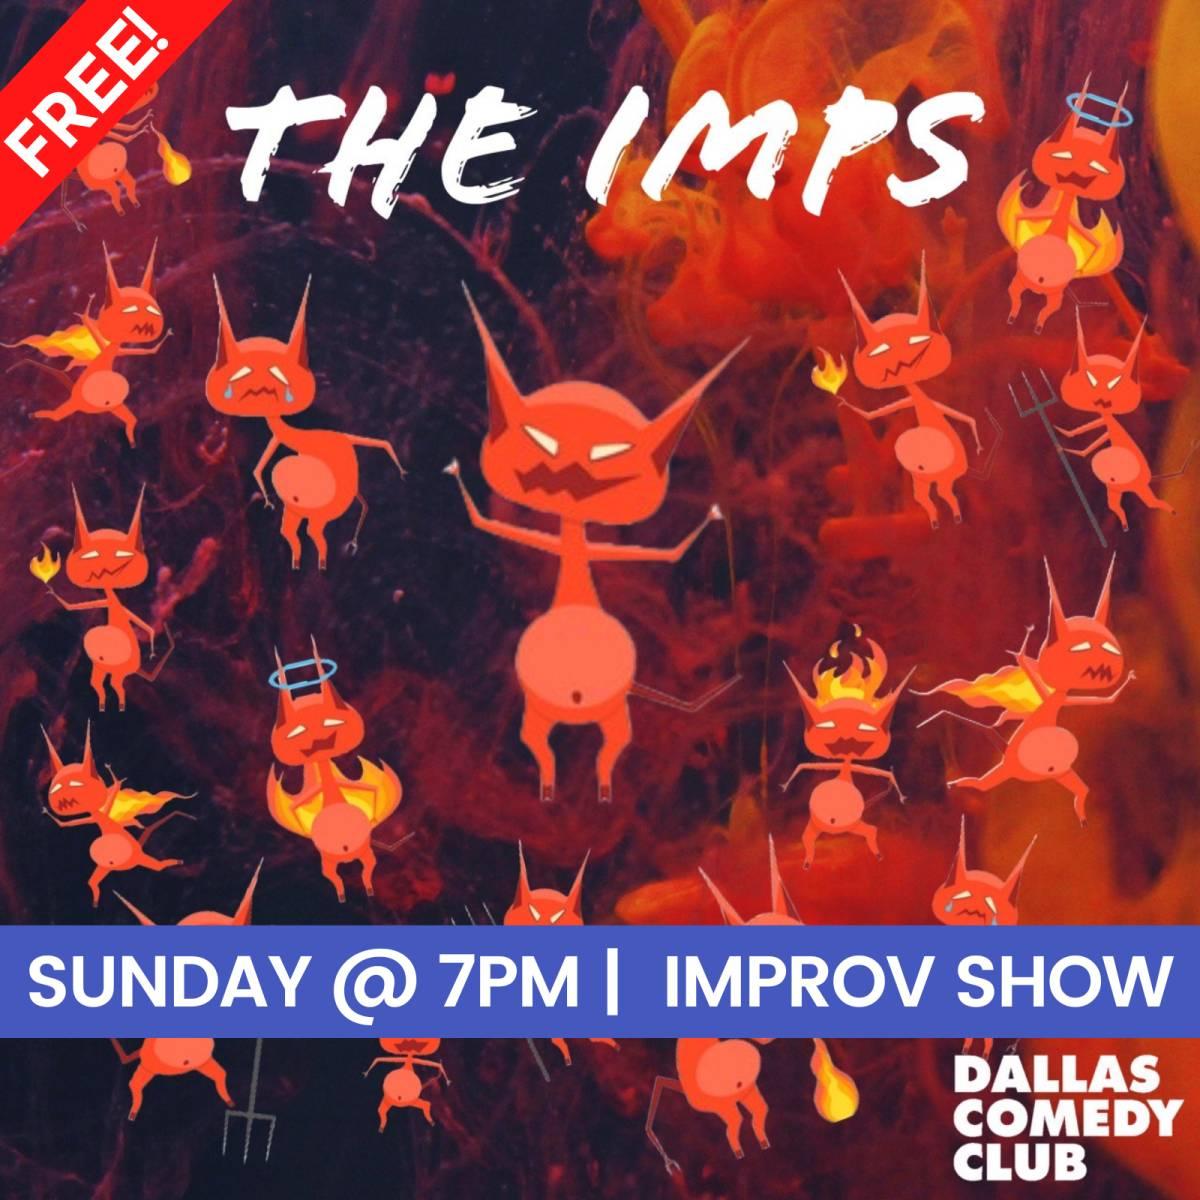 The Imps: Improv Show